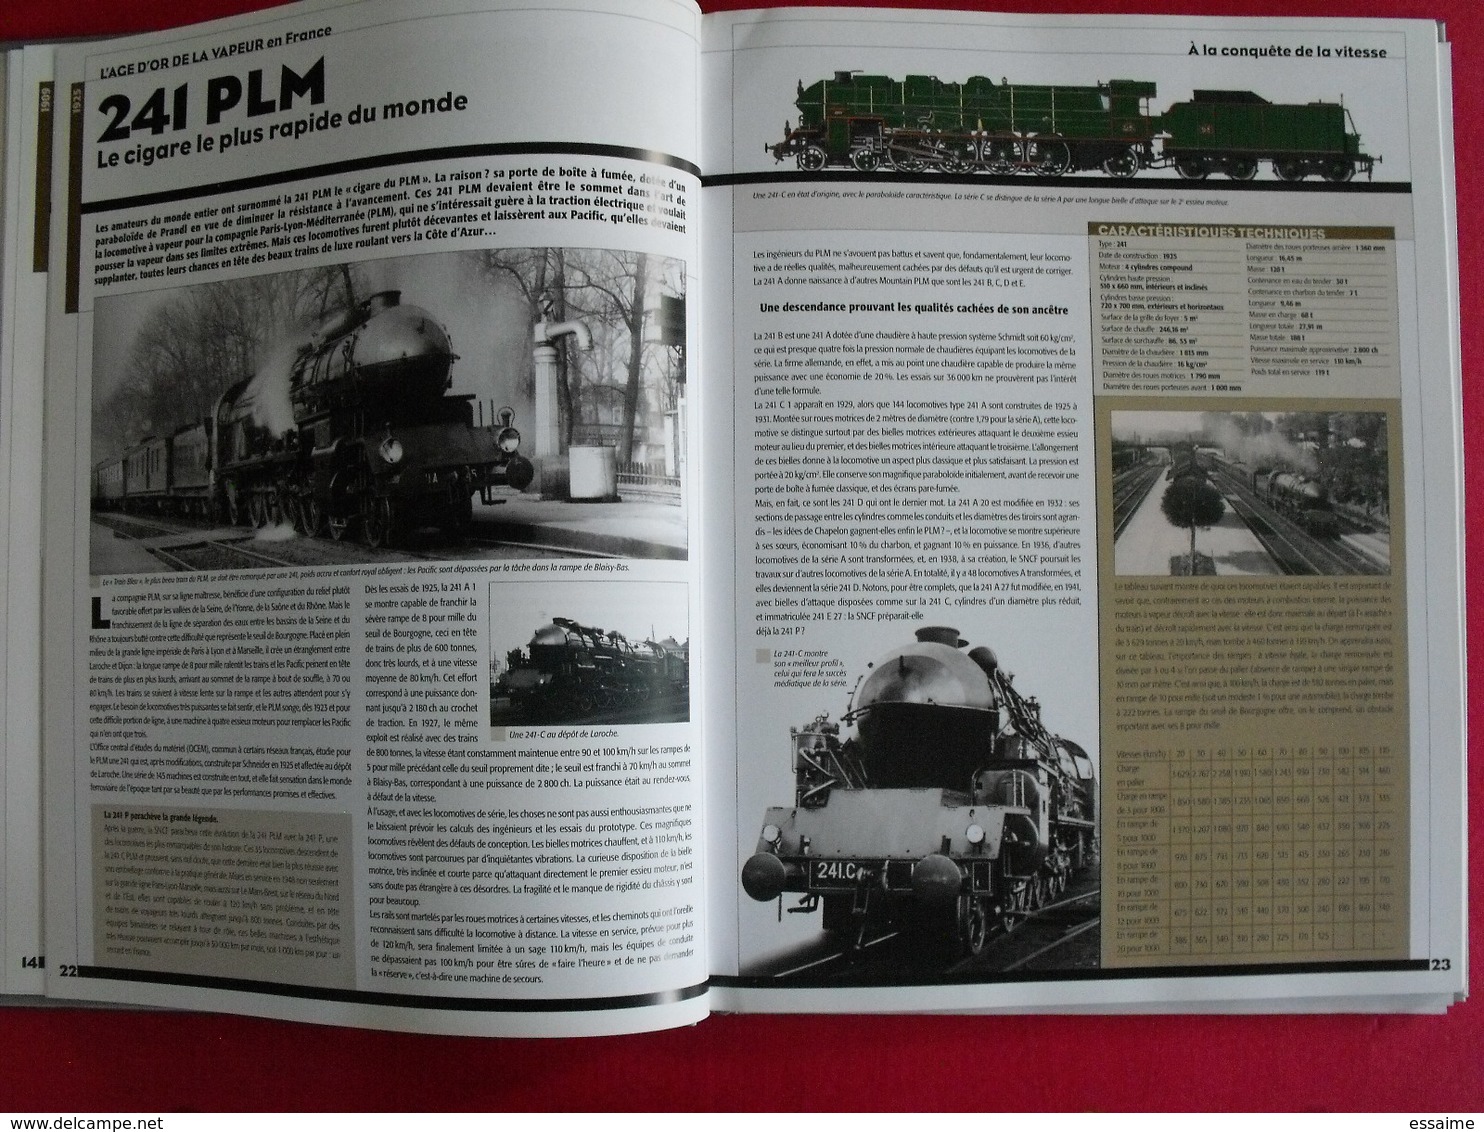 l'age d'or de la traction vapeur en France (1900-1950). Trains de légende. clive lamming. atlas 2005 + poster